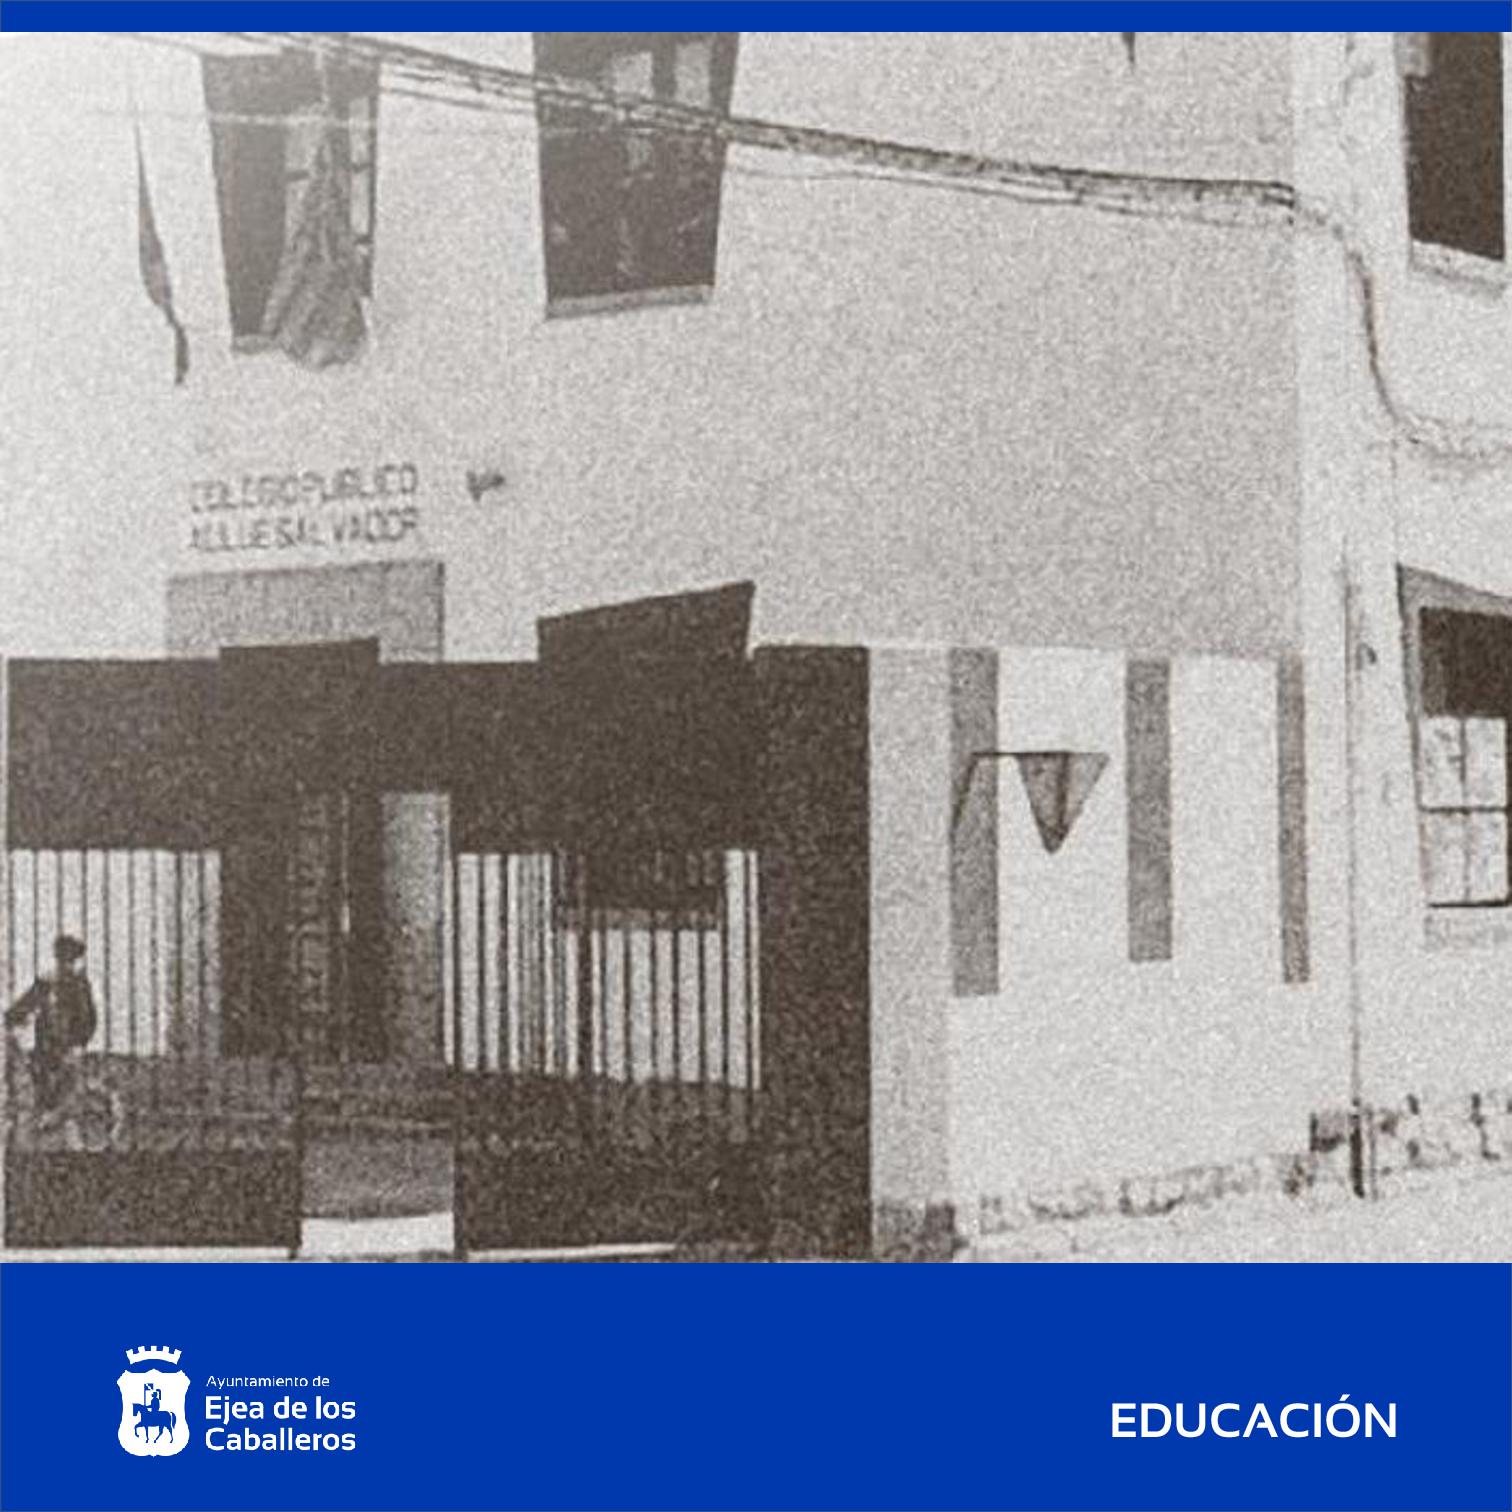 En este momento estás viendo “Una escuela abierta al mundo”: Inauguración de la exposición del 75 aniversario del colegio público Cervantes